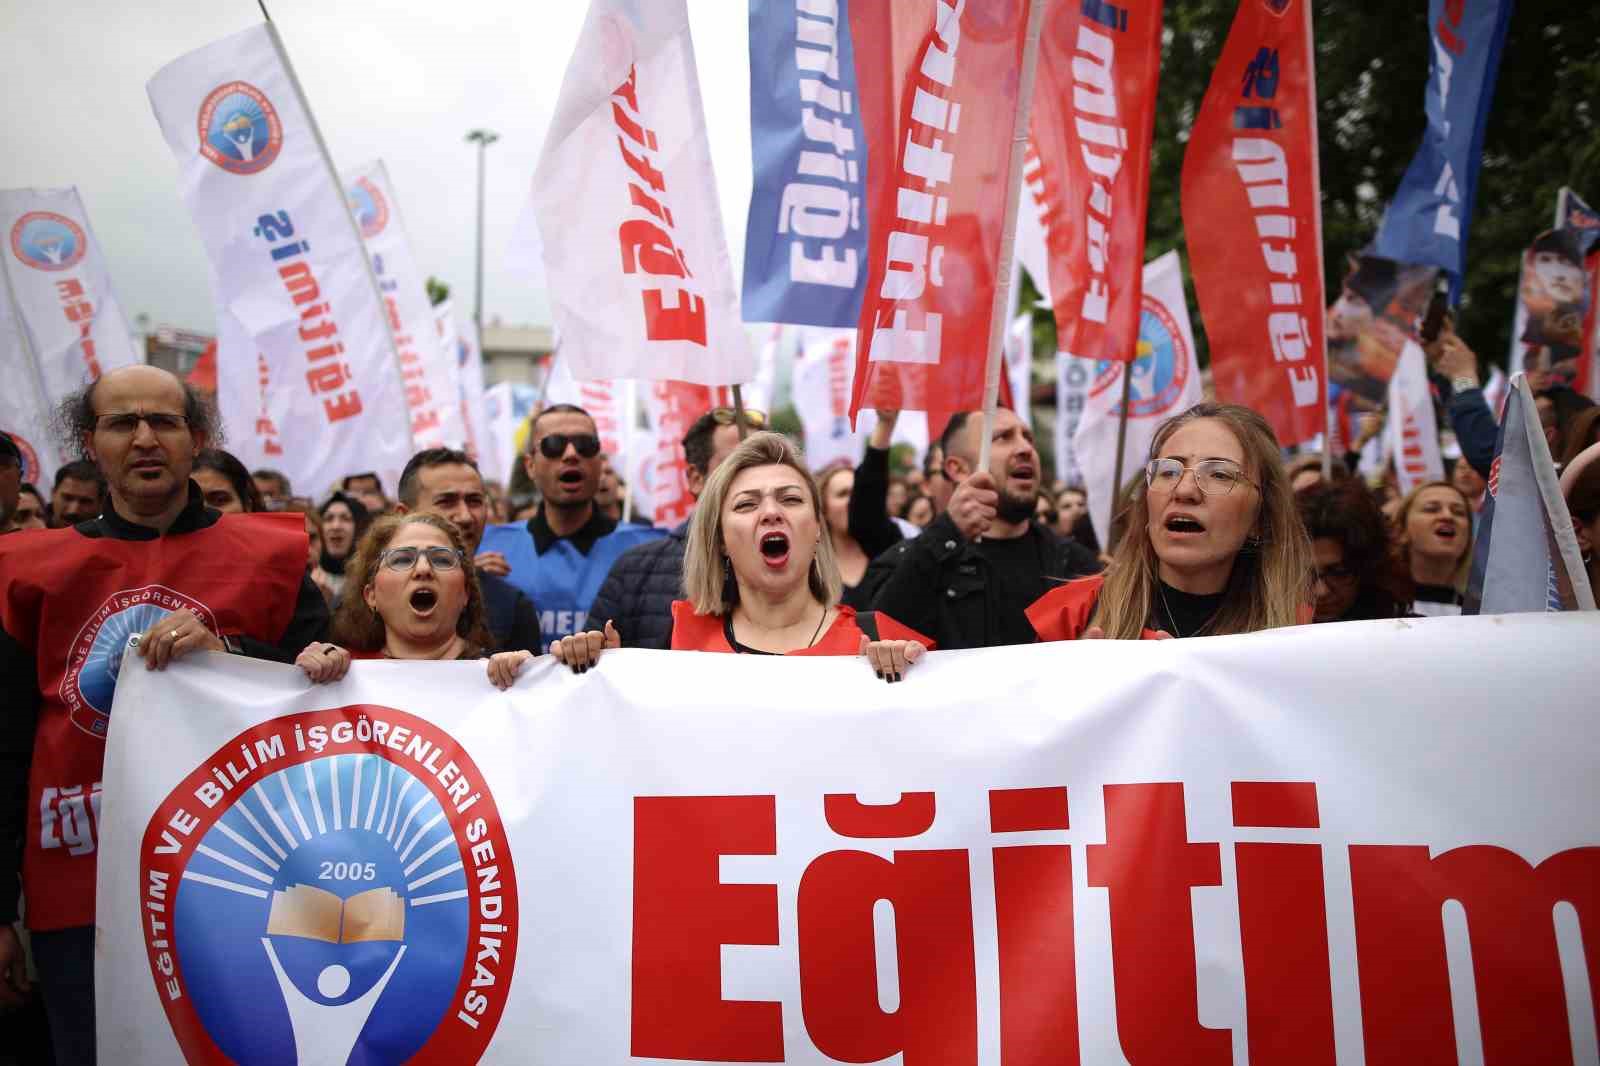 istanbulda bir ogretmenin oldurulmesi bursada protesto edildi 9 dcHSPcKT